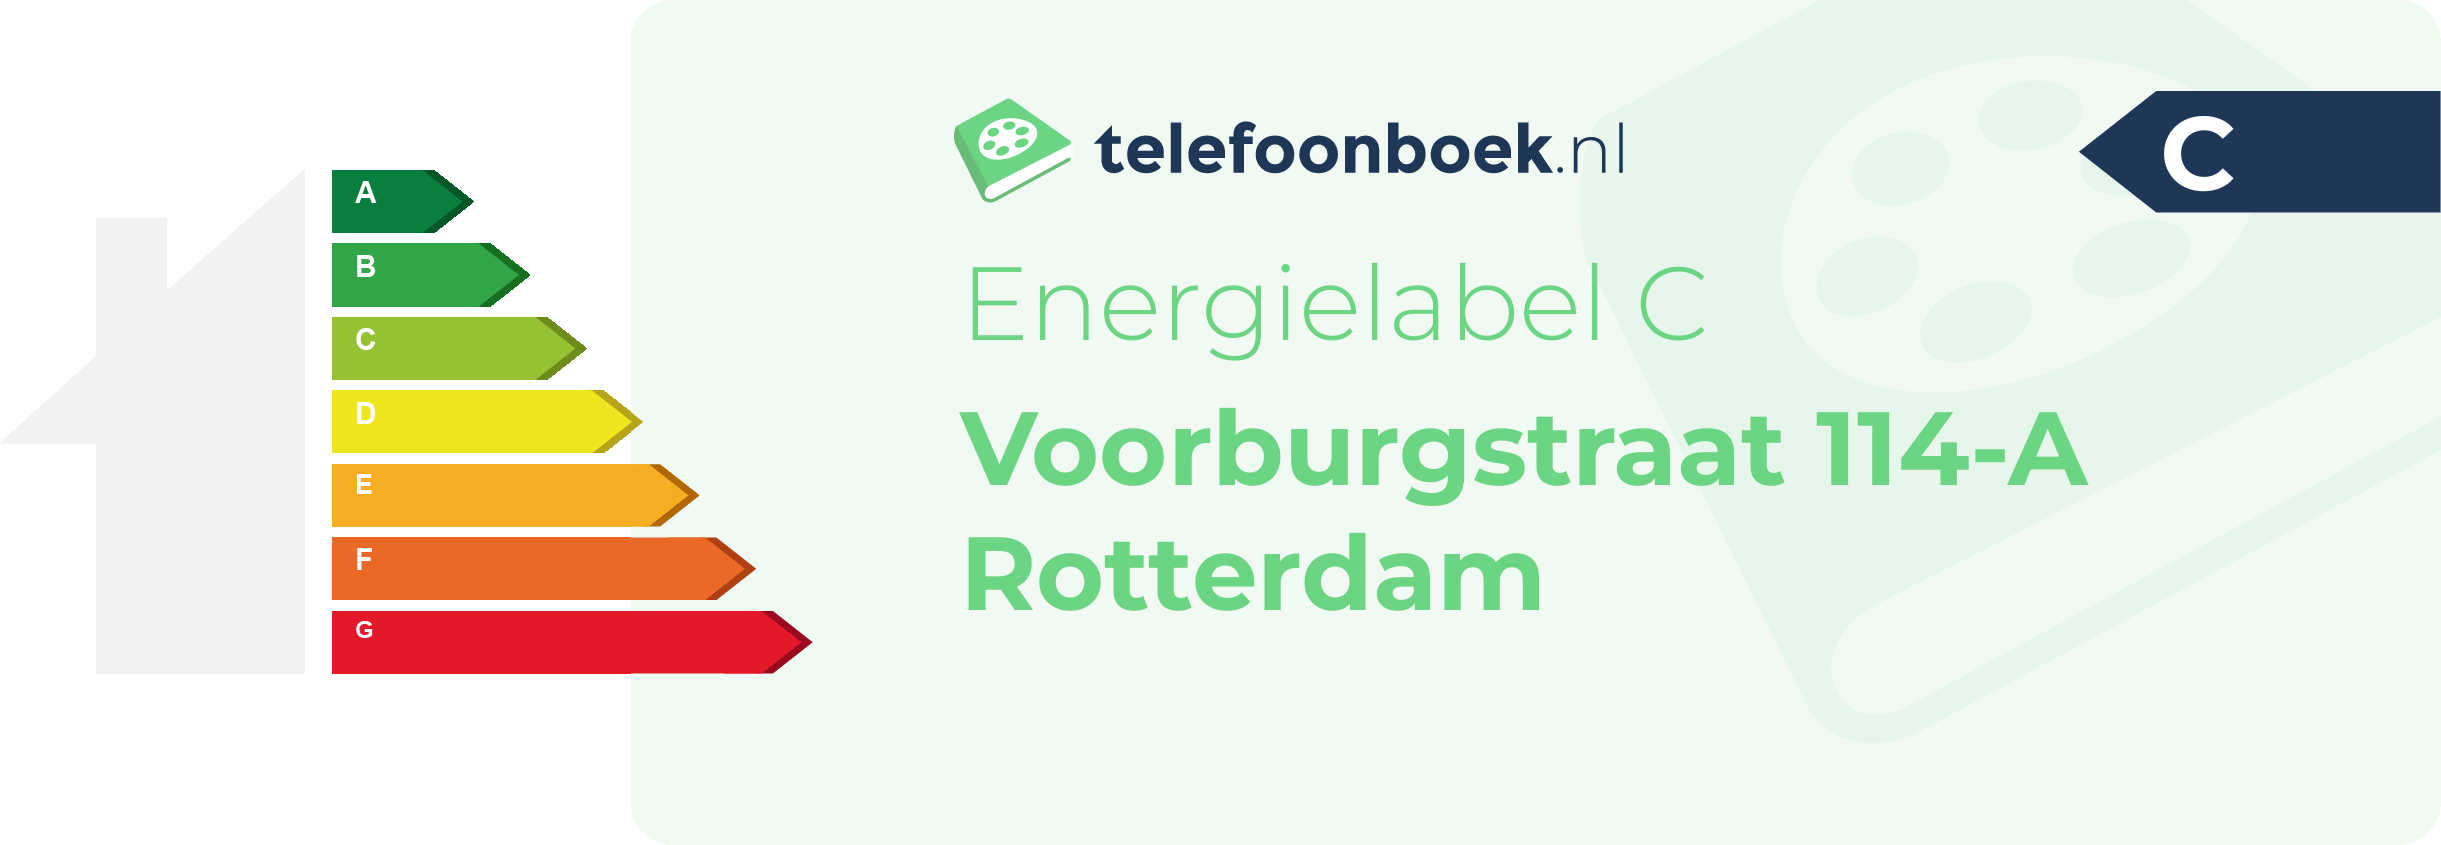 Energielabel Voorburgstraat 114-A Rotterdam